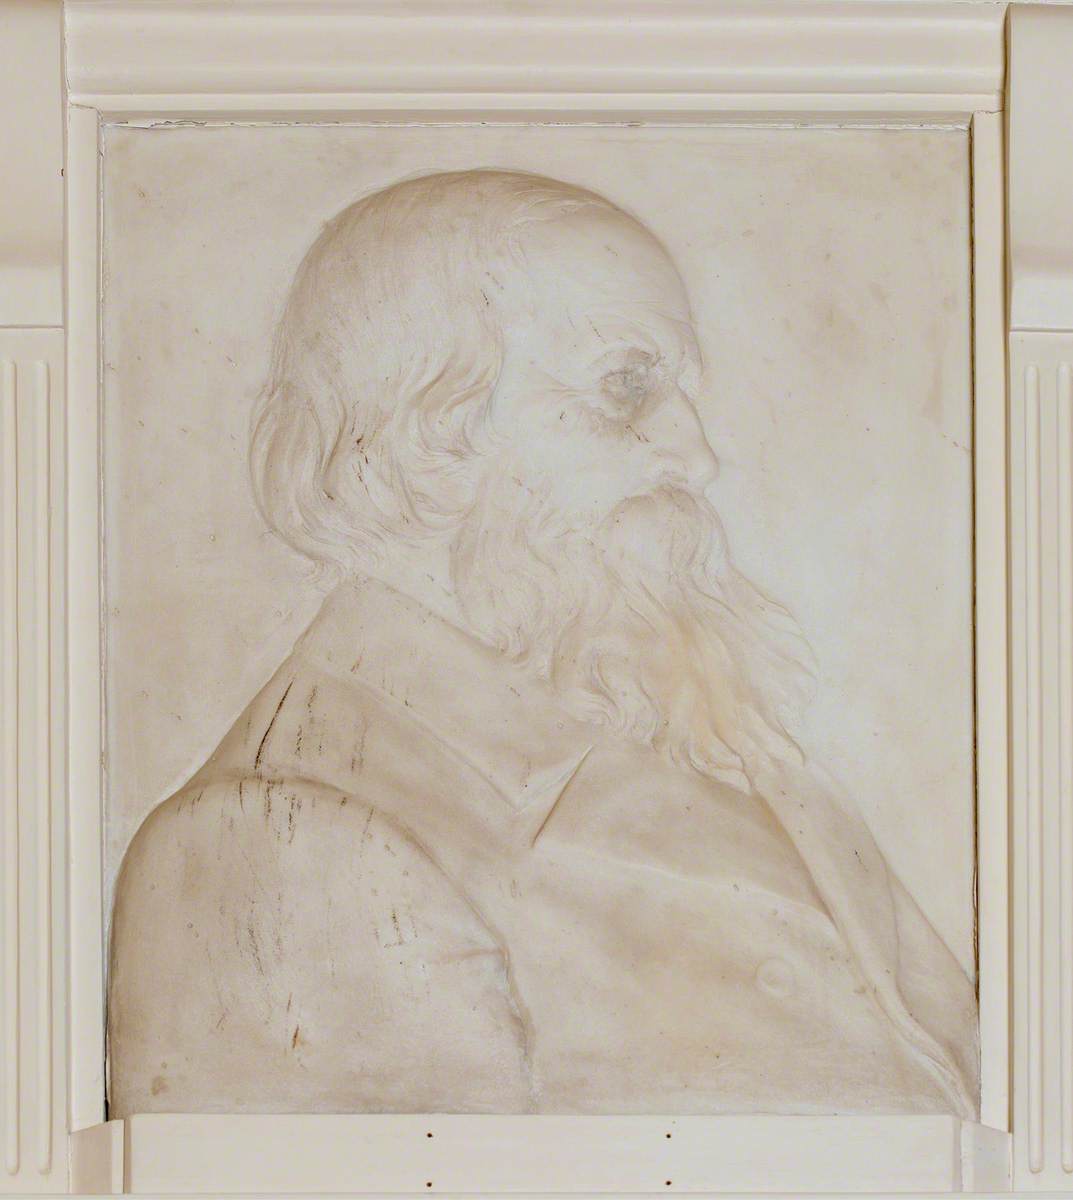 Sir Thomas Dyke Acland (1809–1898), 11th Bt, PC, DCL, FRS